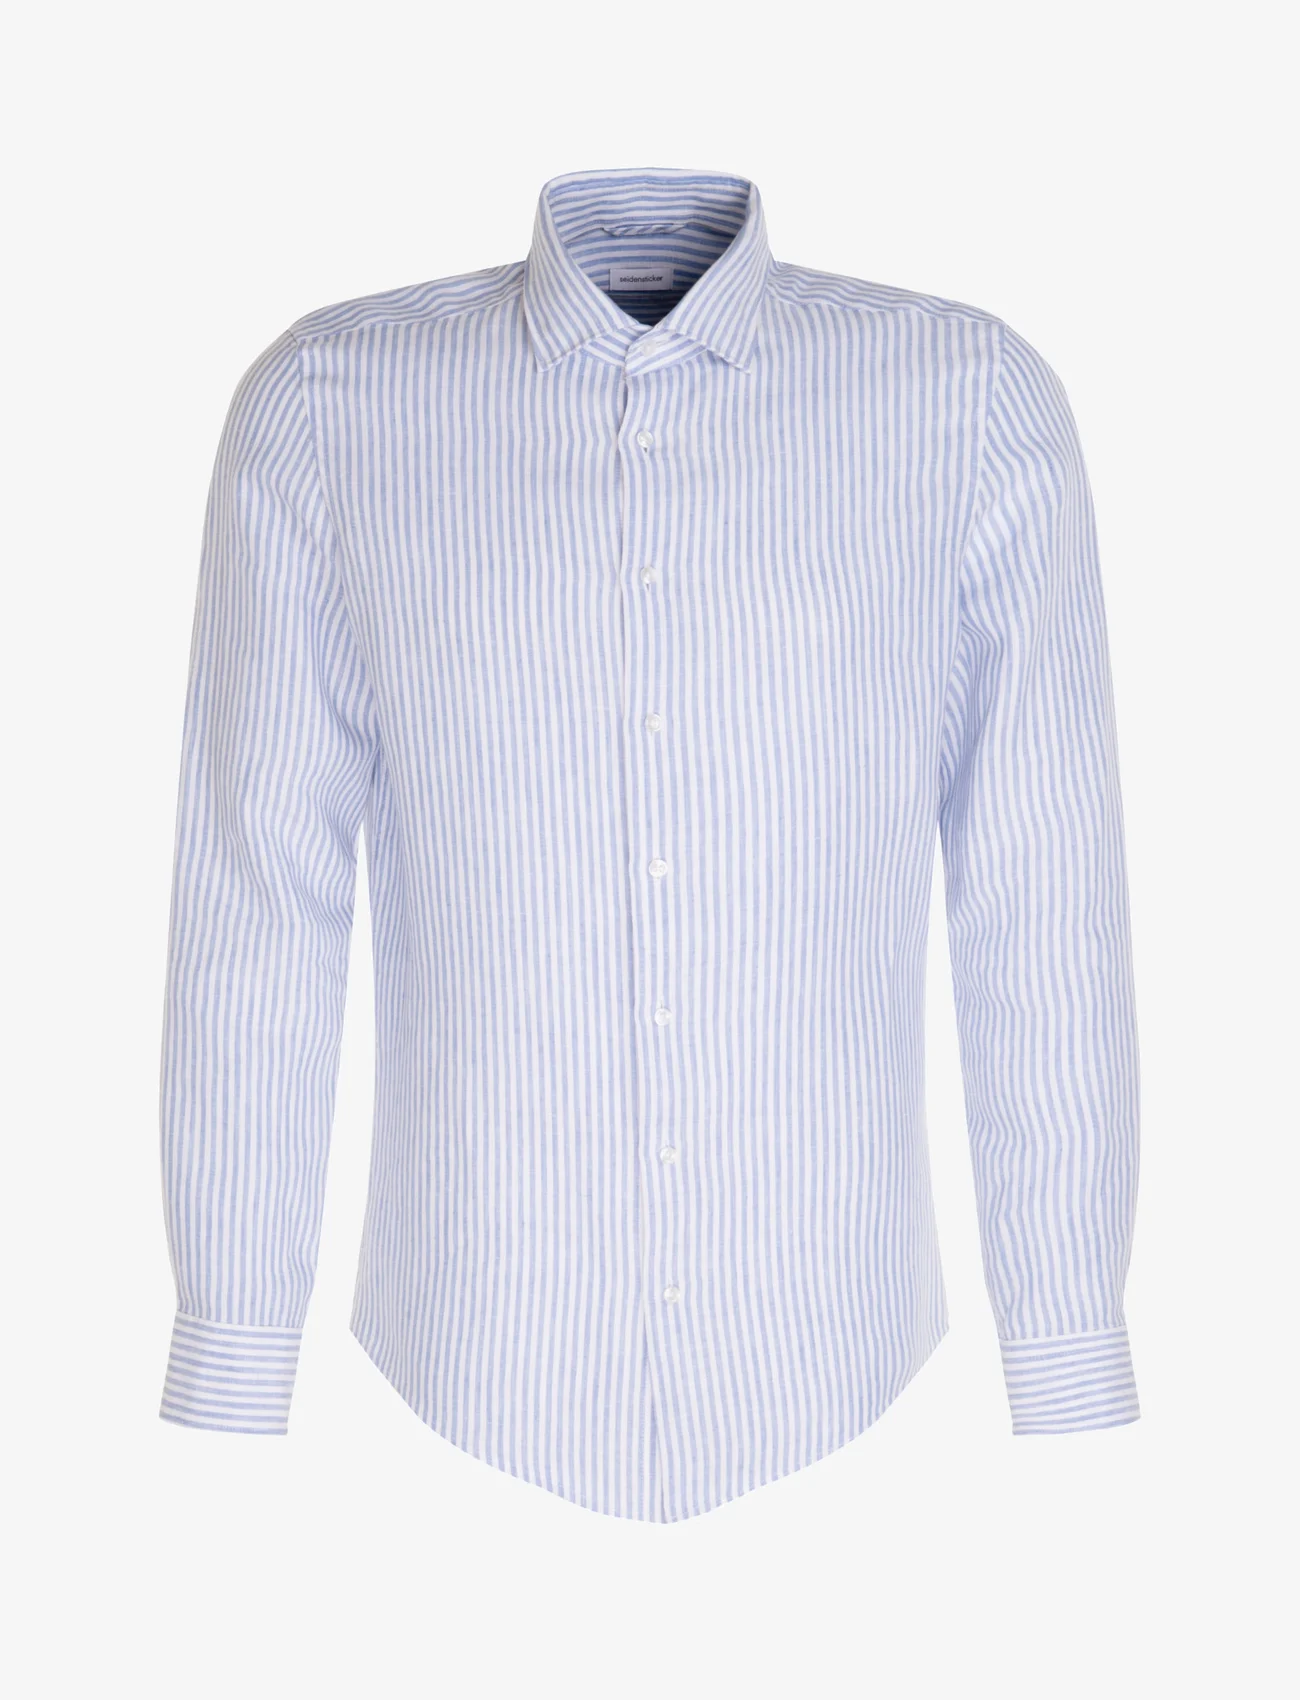 Seidensticker - CITYHEMDEN 1/1 ARM - linen shirts - 11 hellblau - 0